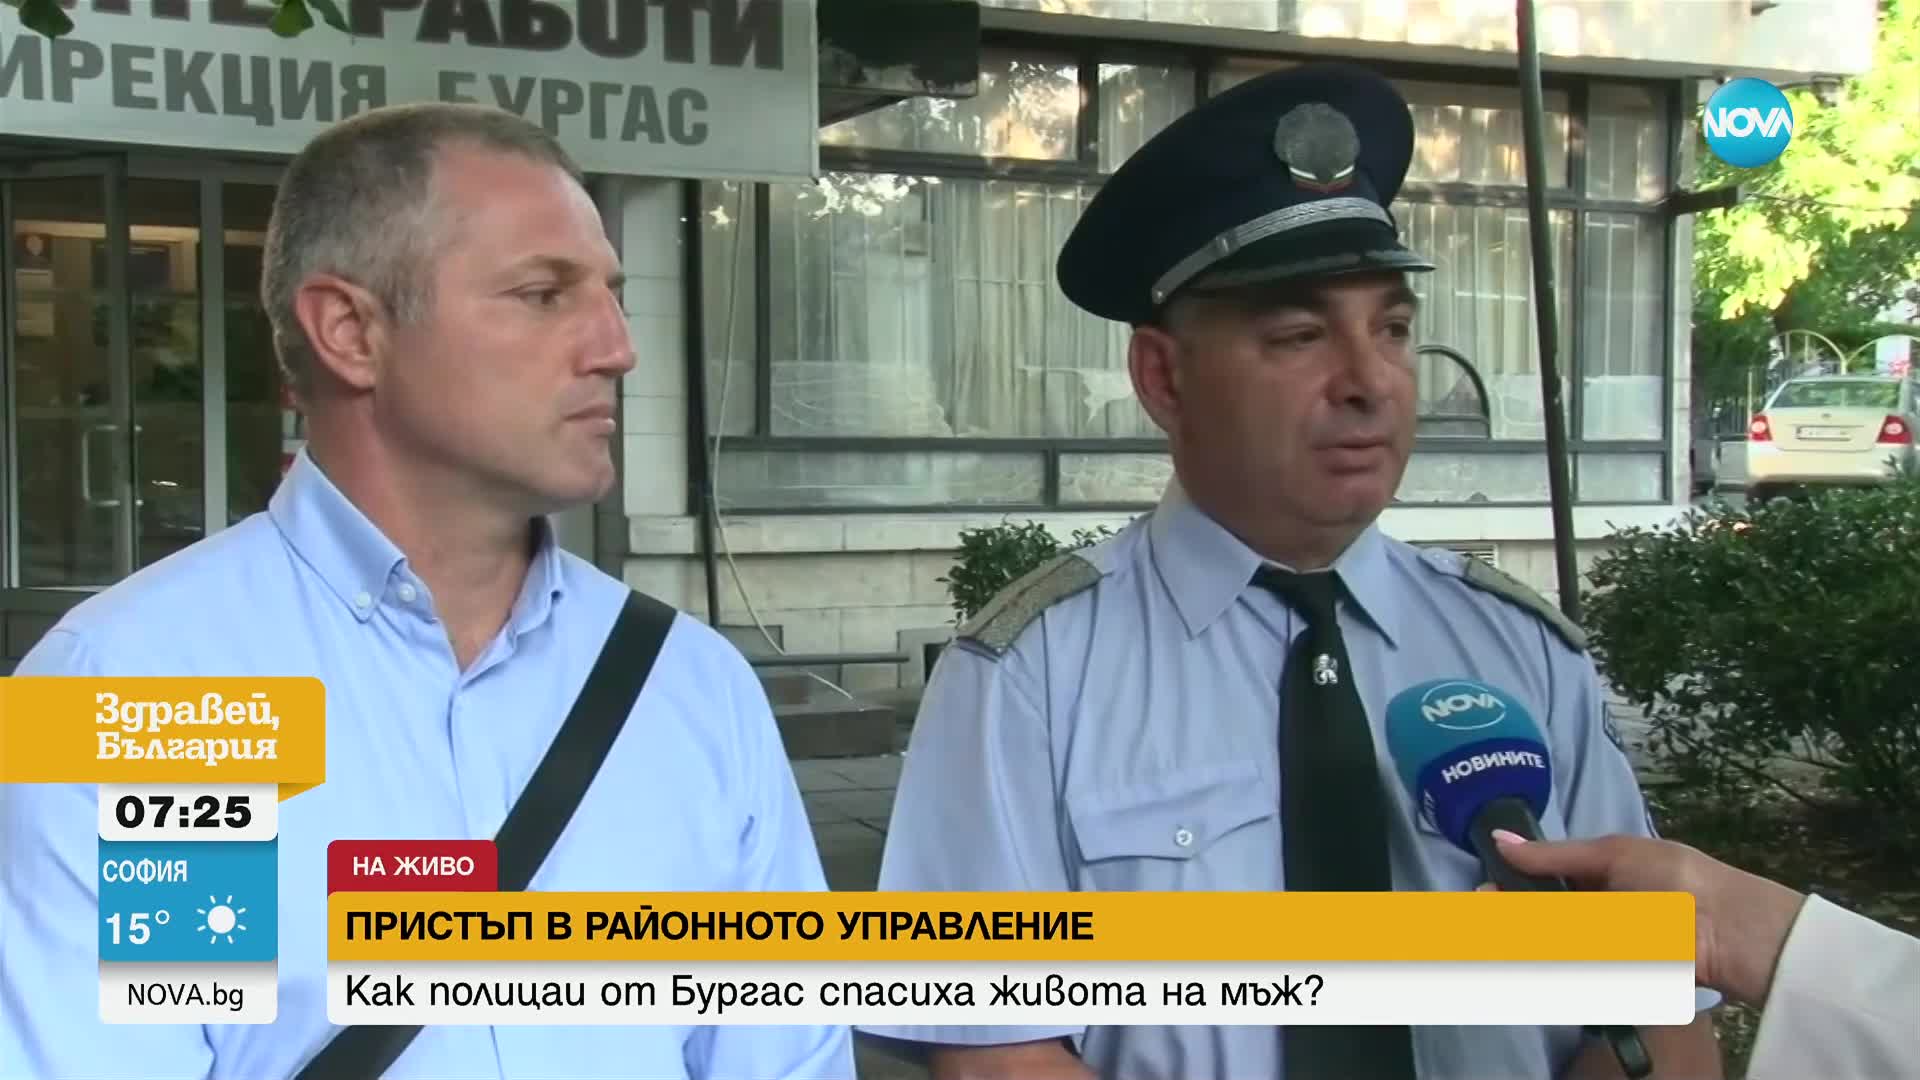 Полицаи спасиха живота на мъж, получил пристъп в районното управление в Бургас